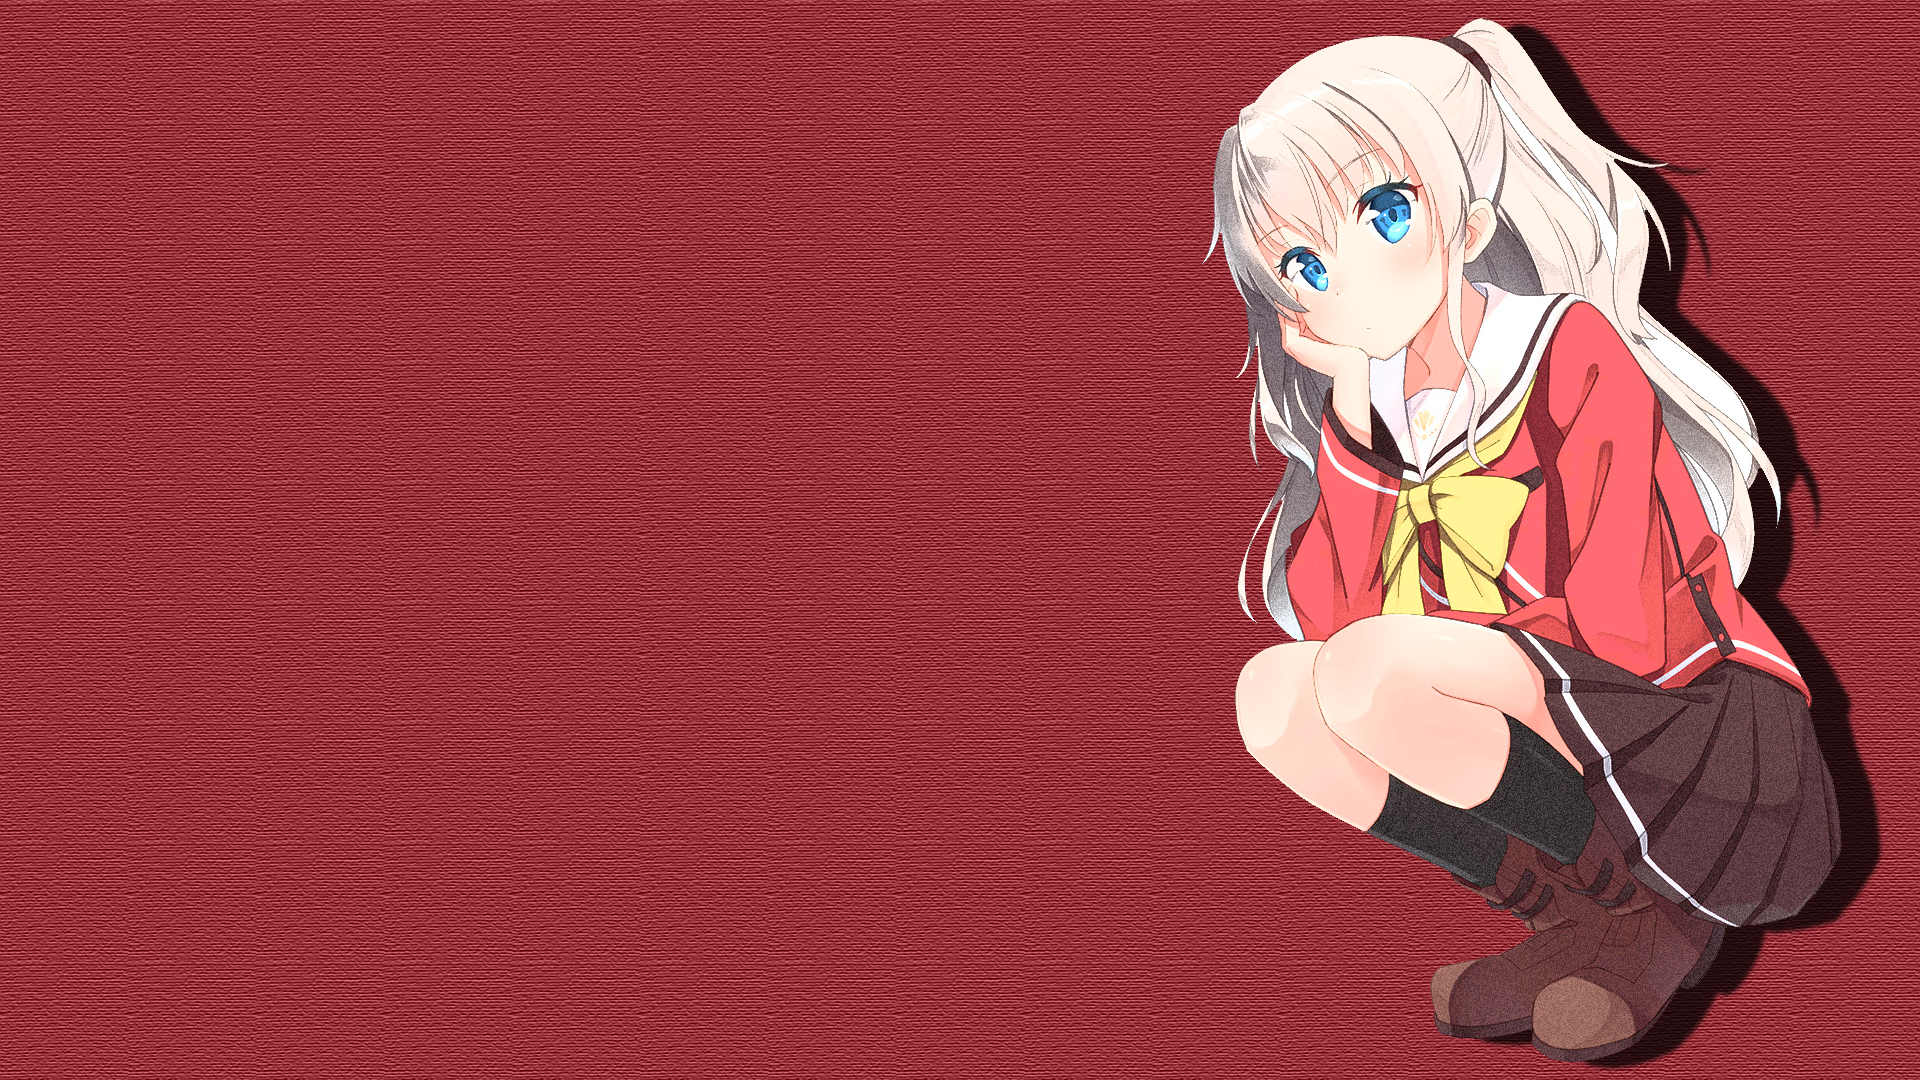 Tổng hợp 999 Anime background url tuyệt đẹp, miễn phí